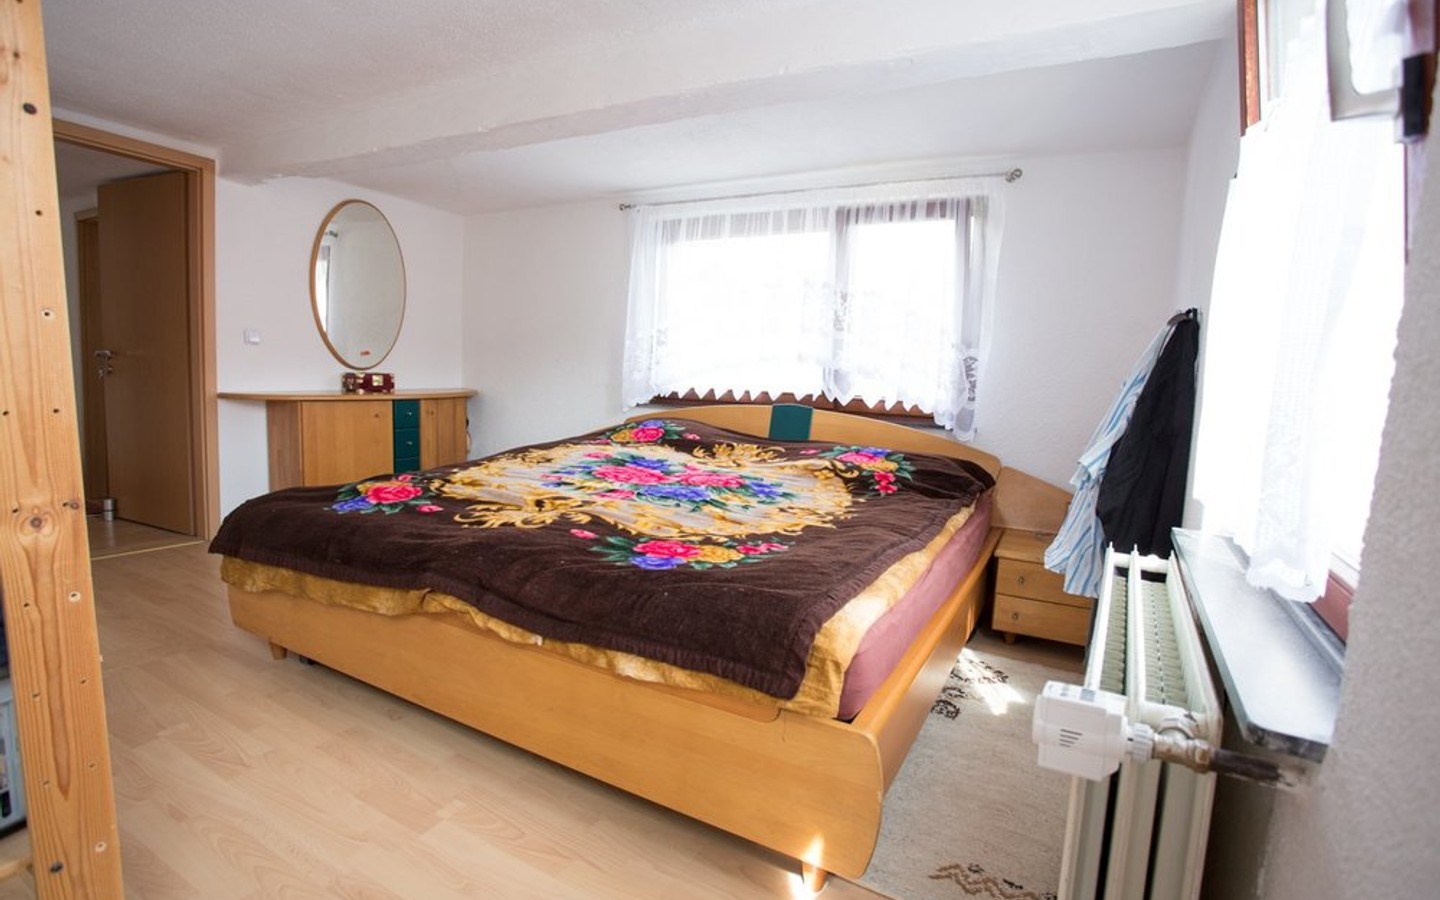 Schlafzimmer - Einfamilienhaus mit Gartenparadies in zentraler Lage von Neckargemünd-Mückenloch!